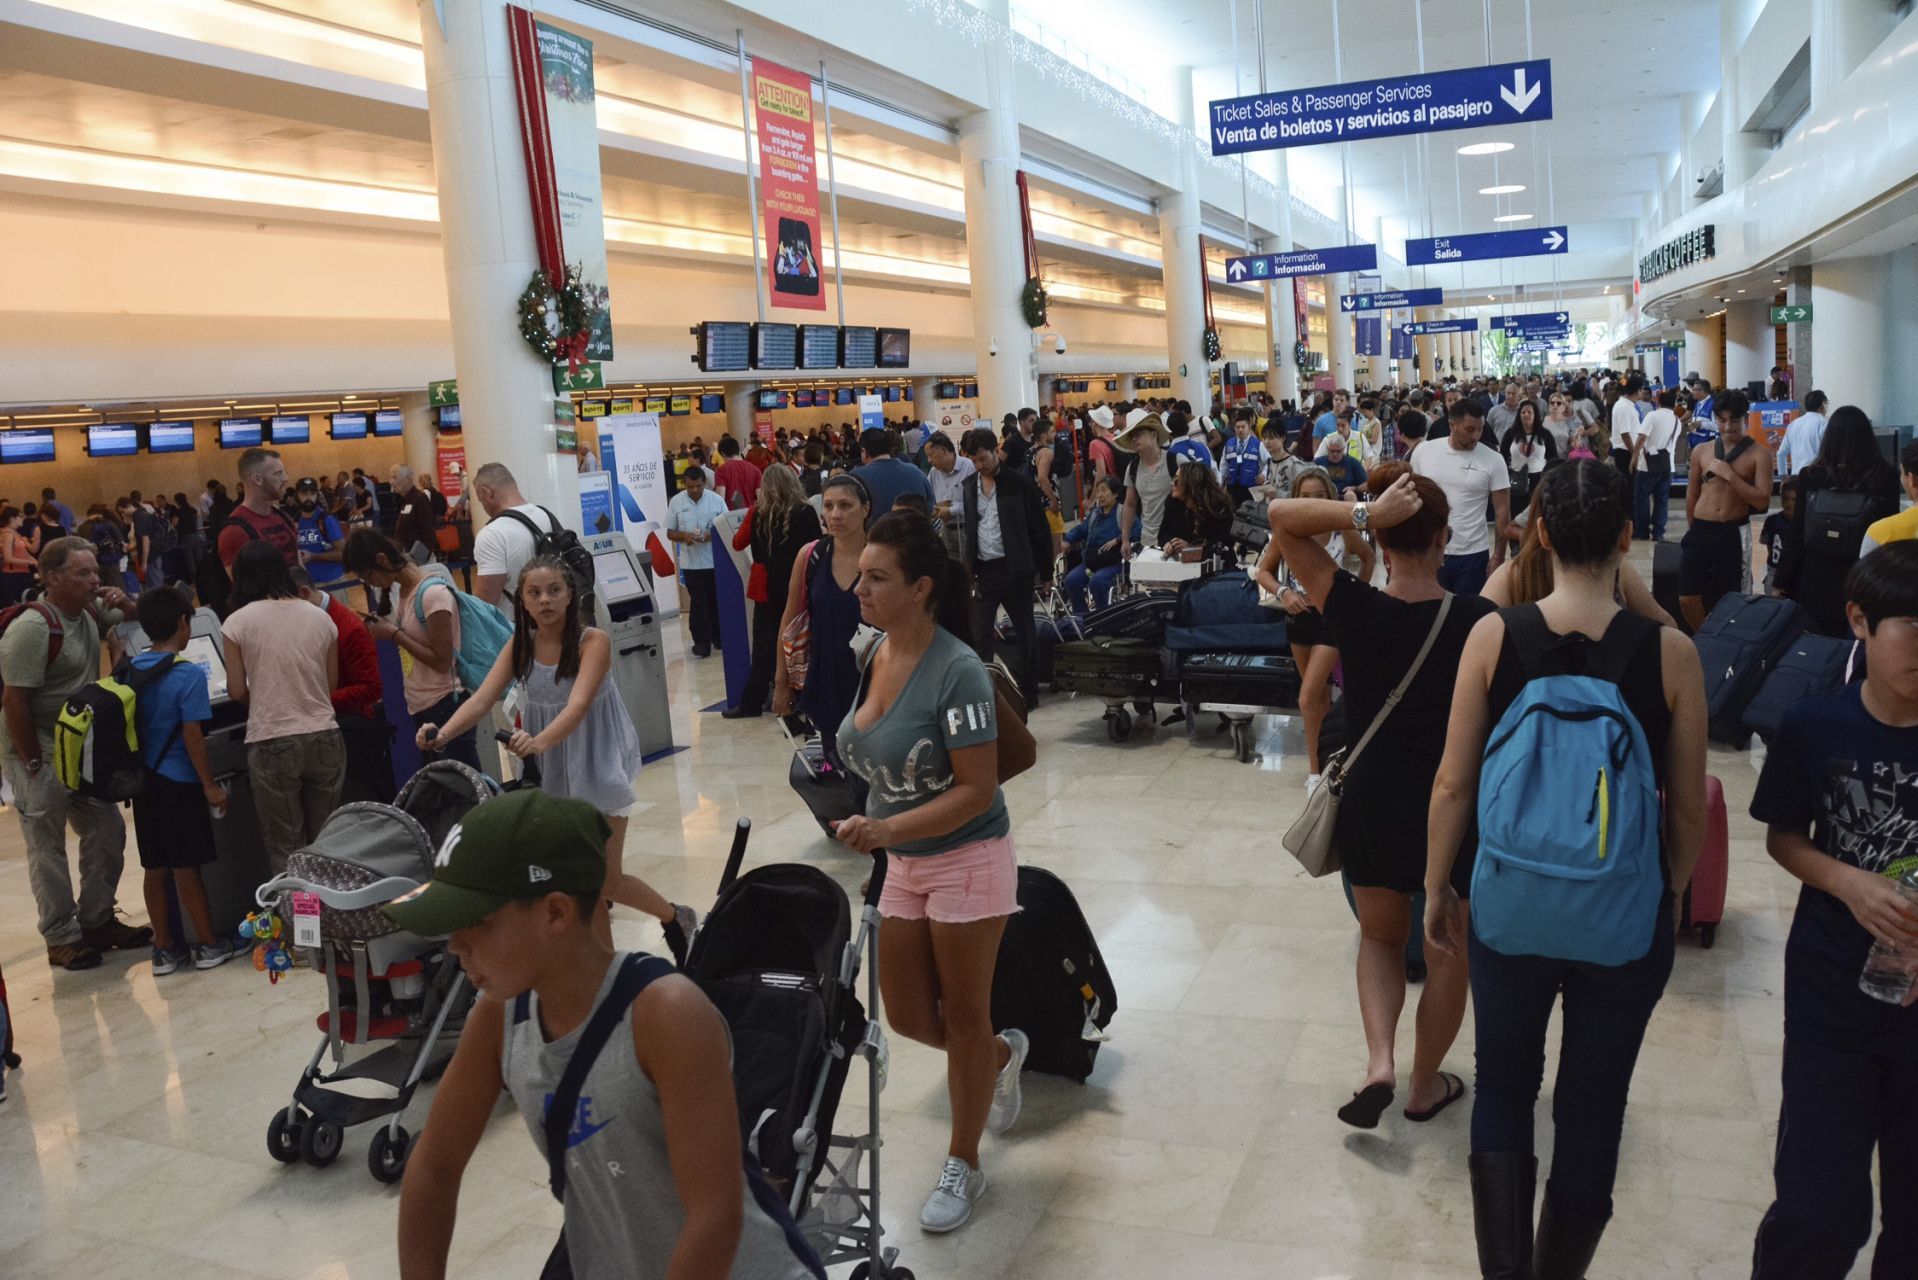 CANCÚN, QUINTANA ROO, 26DICIEMBRE2016.- El gobernador del estado Carlos Joaquín González recibió en el Aeropuerto Internacional de Cancún al pasajero 21 millones. La terminal se encuentra al tope de vacacionistas.
FOTO: ELIZABETH RUIZ /CUARTOSCURO.COM